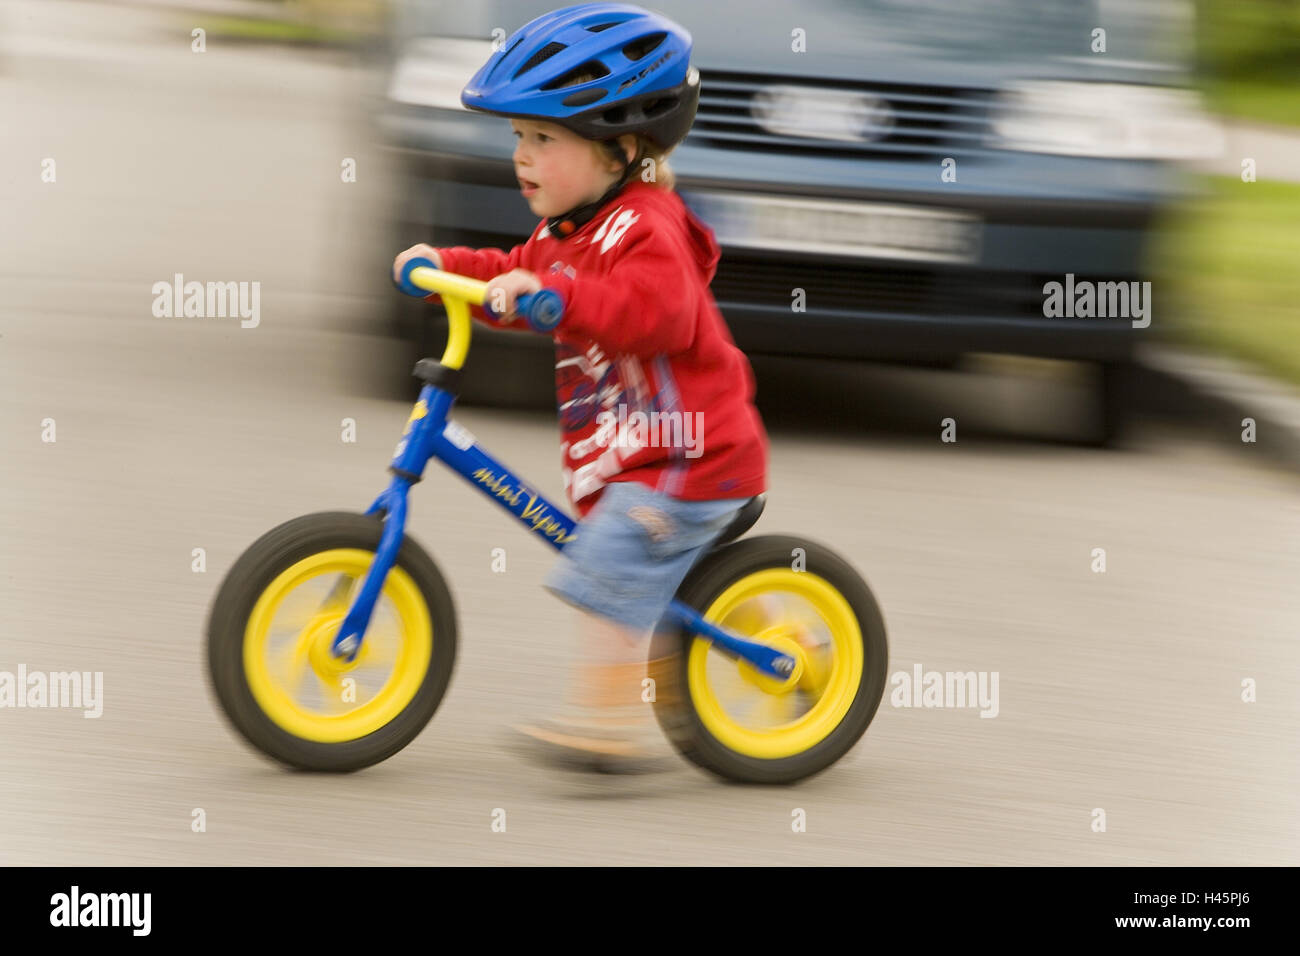 Junge, Fahrradhelm, Laufrad, Laufwerke, auf die Seite, Auto, Unschärfe,  Serie, Kind, Kind, Kindheit, glücklich, 2-3 Jahre, Schutz Helm, Freizeit,  draußen, Bewegung Motorik Gleichgewicht, Prozess, Fortbewegung,  Geschwindigkeit, Geschwindigkeit ...